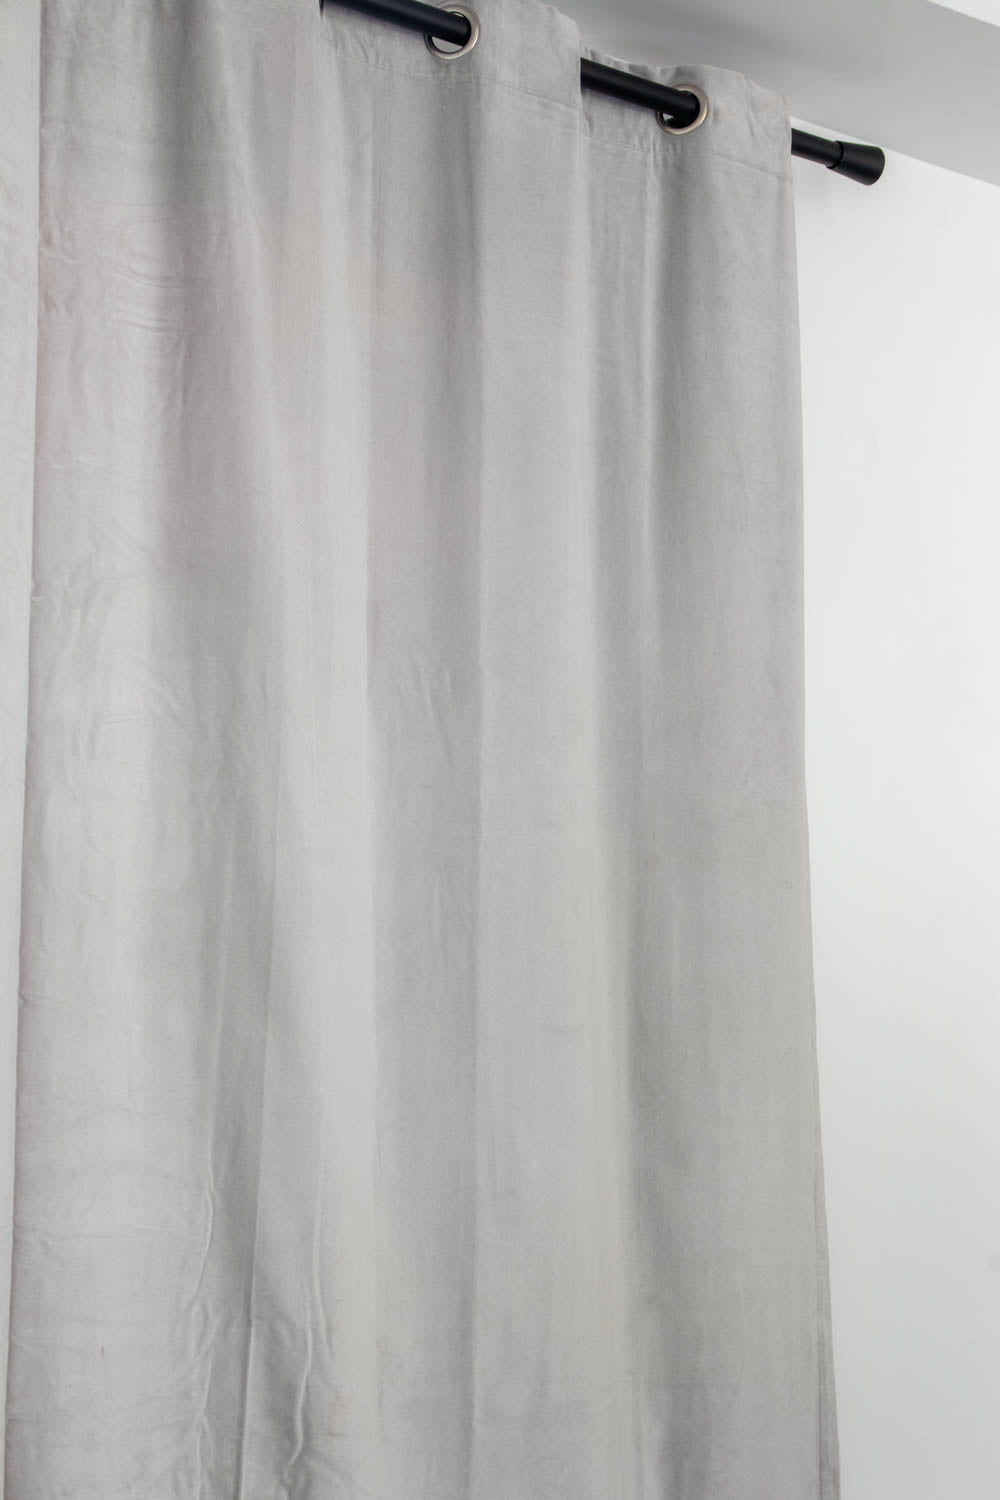 vivaraise-elise rideau velours doublé 140x280 cm grege